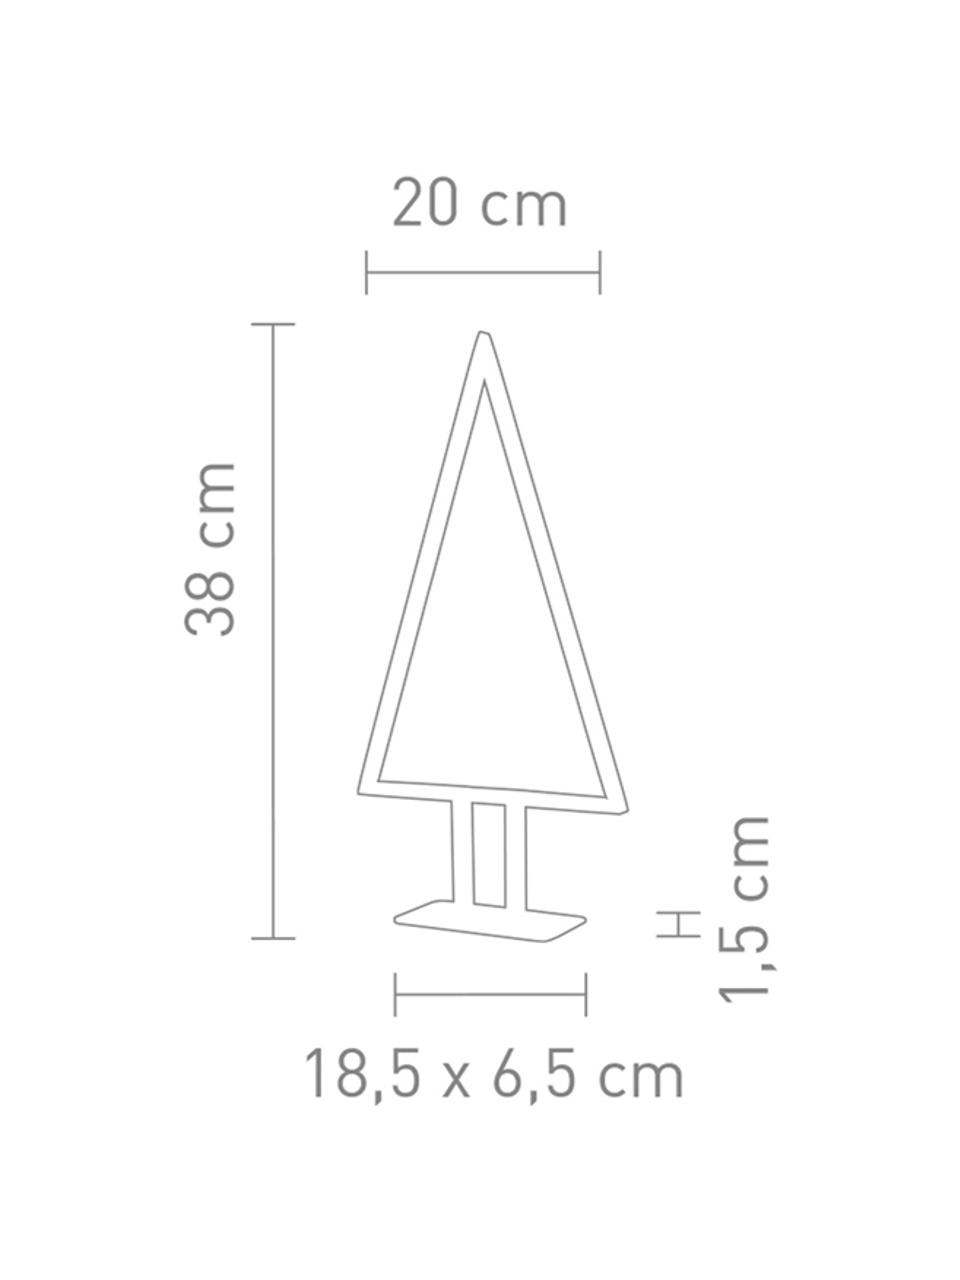 Dekorativní LED svítidlo se zástrčkou Pine, V 38 cm, Bambus, Š 20 cm, V 38 cm